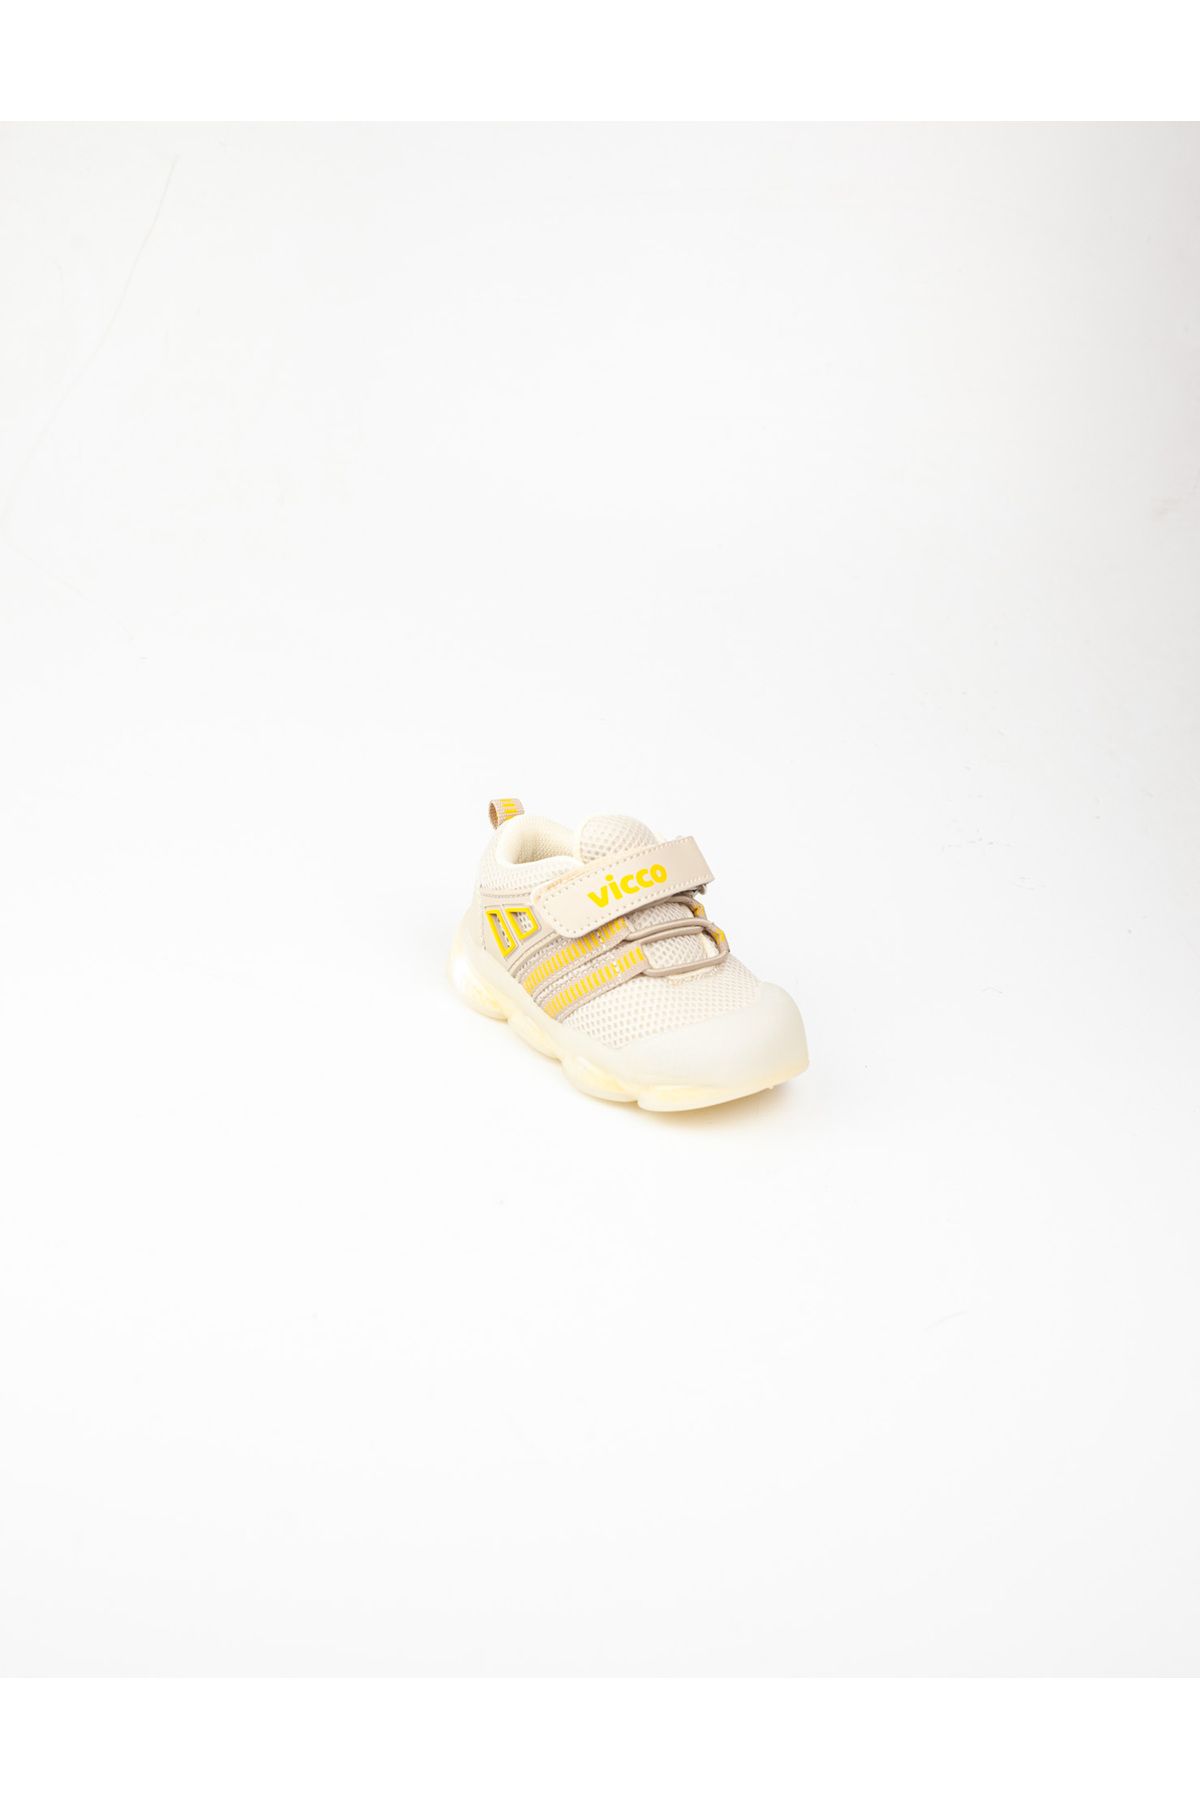 Vicco 346. E24Y. 150 Orante Bej Işıklı İlk Adım Ayakkabısı